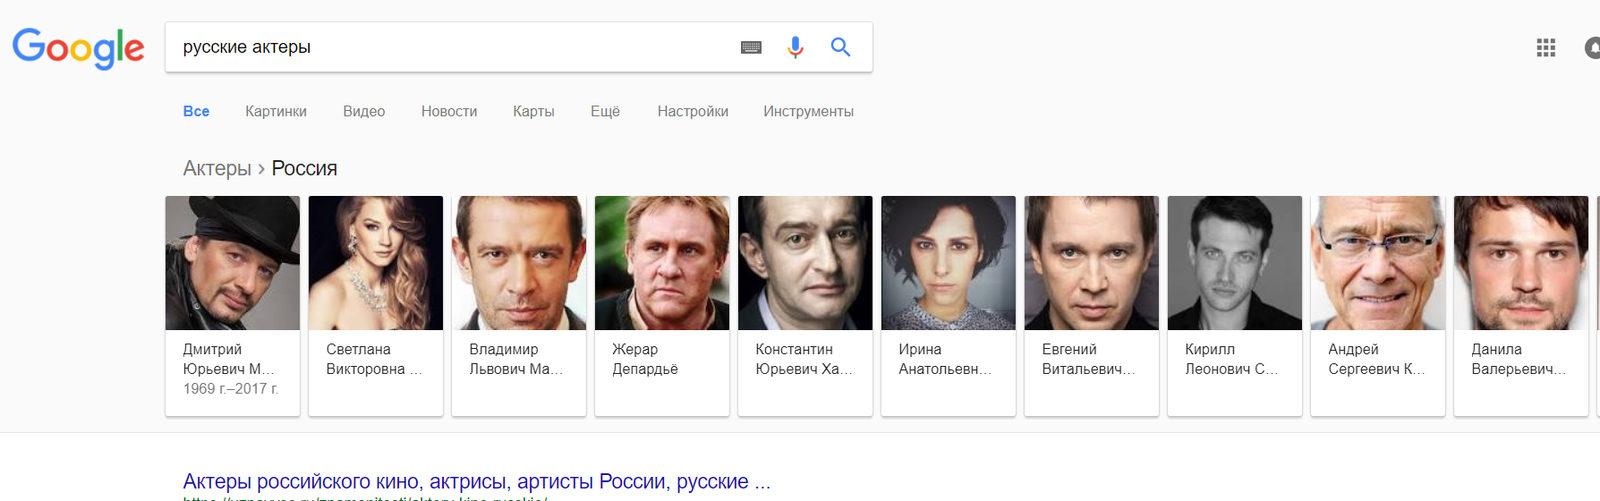 You are Russian? - Si - Russian, Coub, Gerard Depardieu